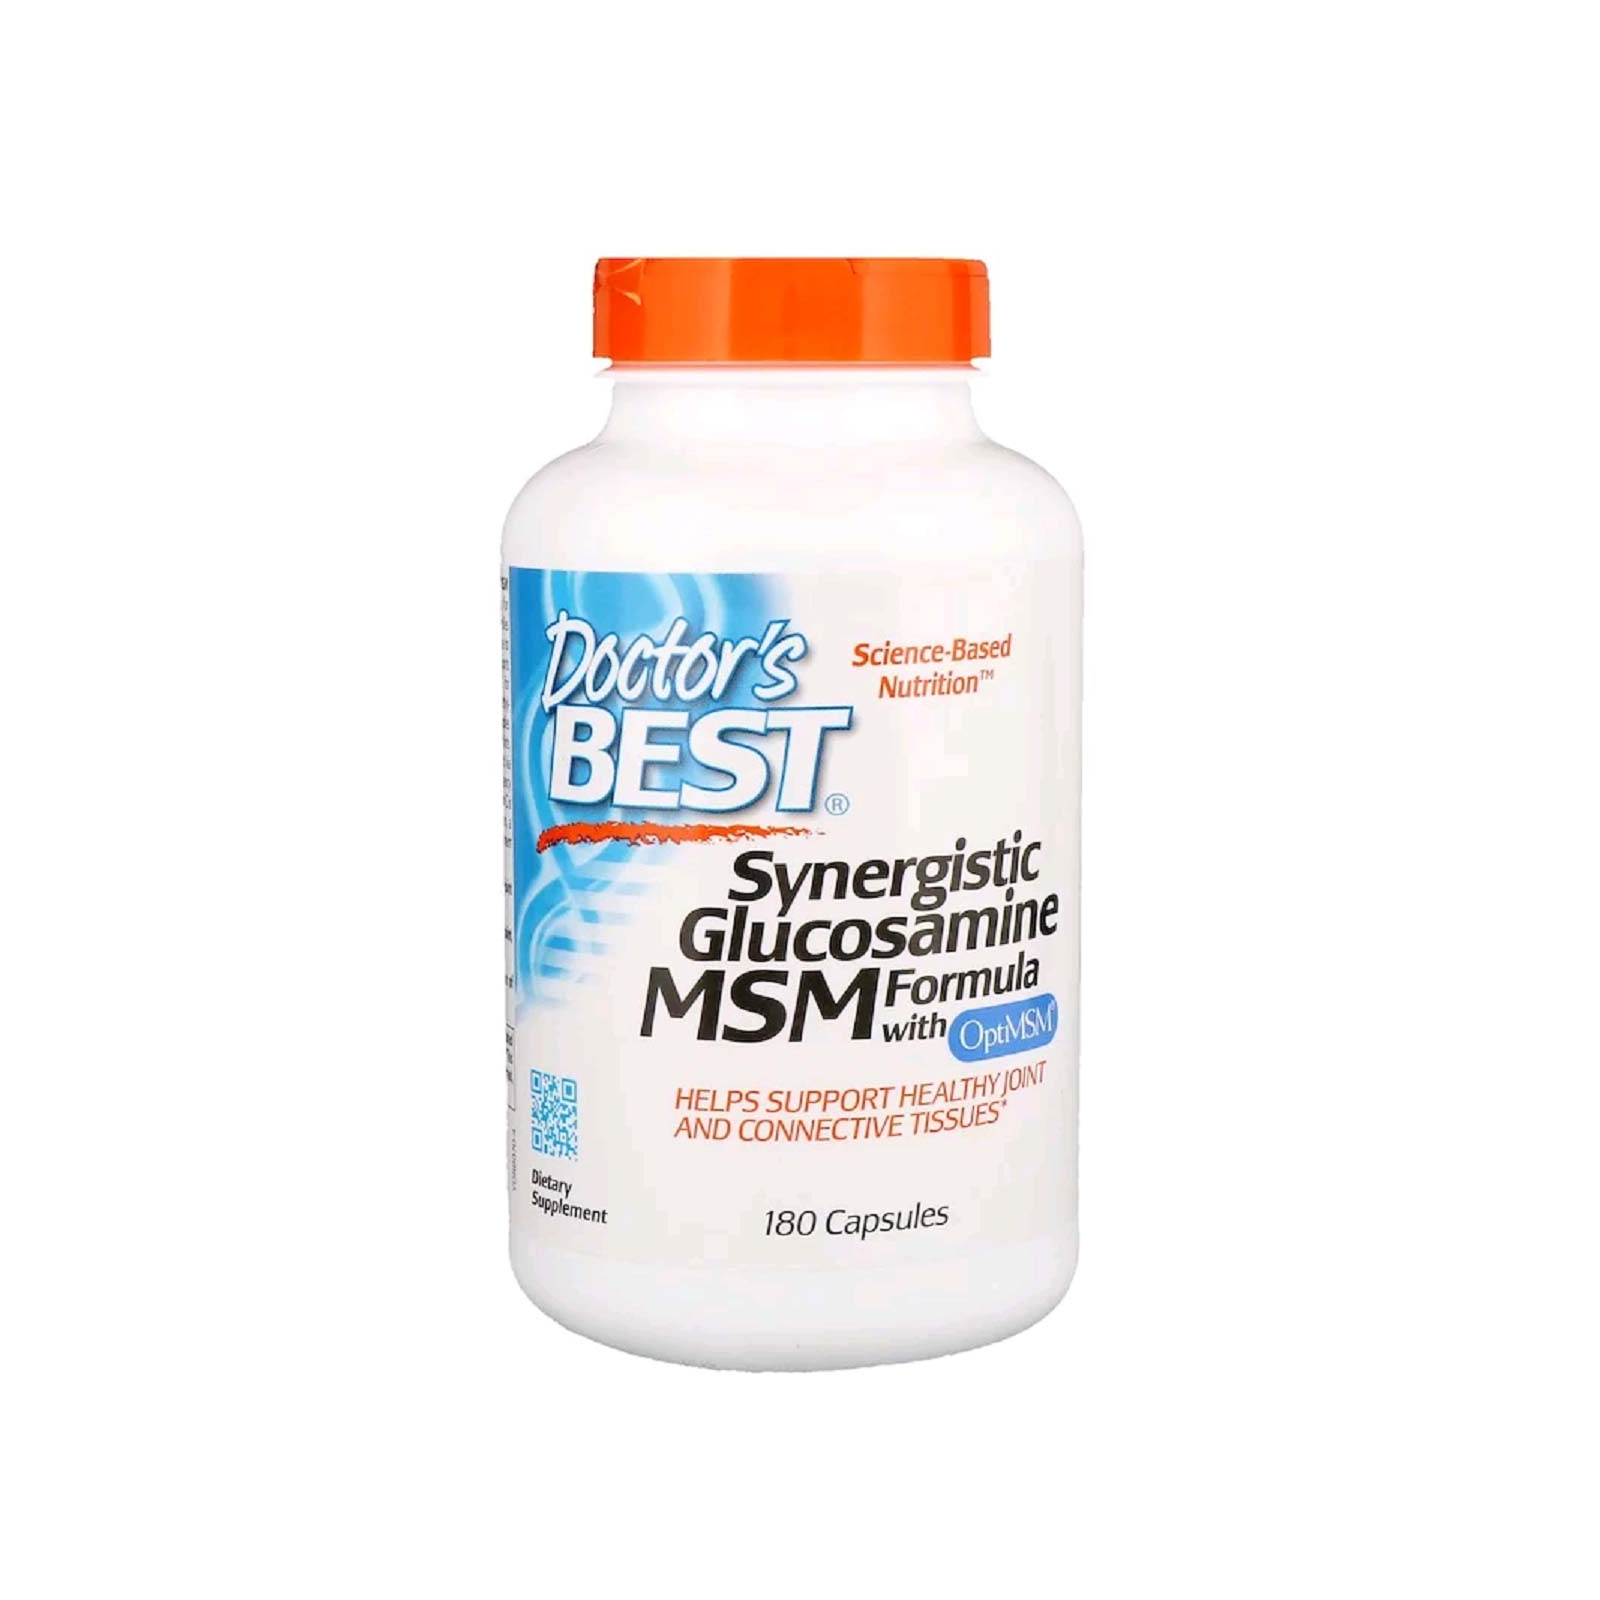 Вітамінно-мінеральний комплекс Doctor's Best Синергічний Глюкозамін МСМ-Формула, OptiMSM, 180 капсул (DRB-00070)